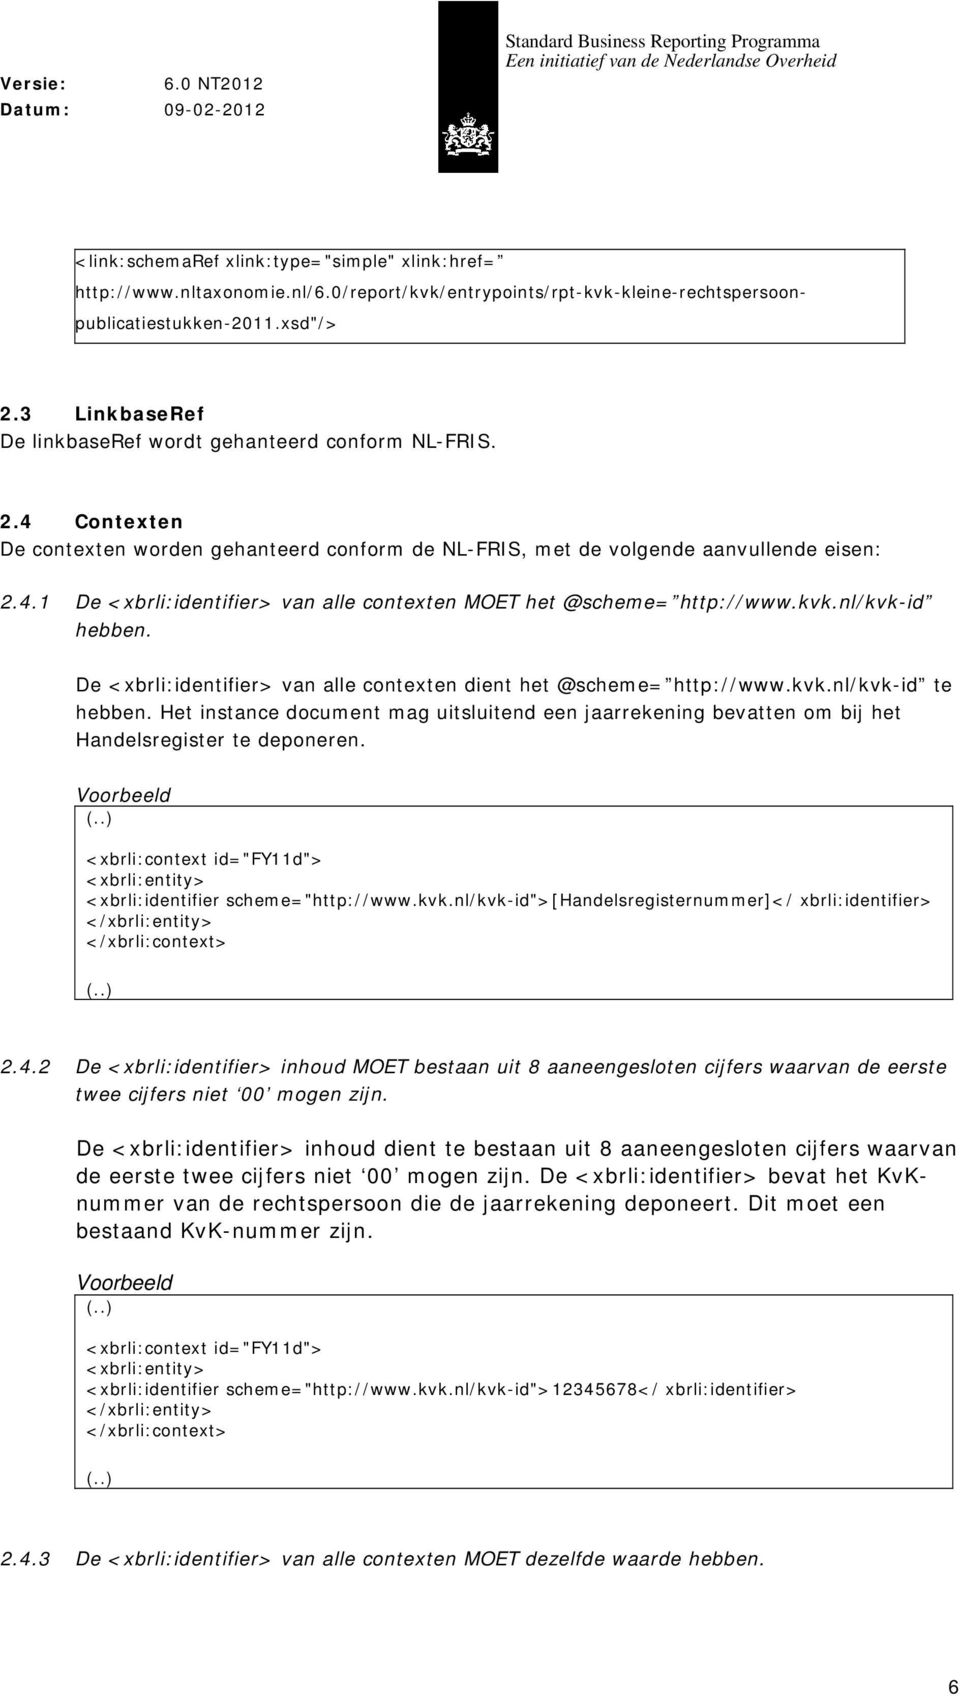 kvk.nl/kvk-id hebben. De <xbrli:identifier> van alle contexten dient het @scheme= http://www.kvk.nl/kvk-id te hebben.